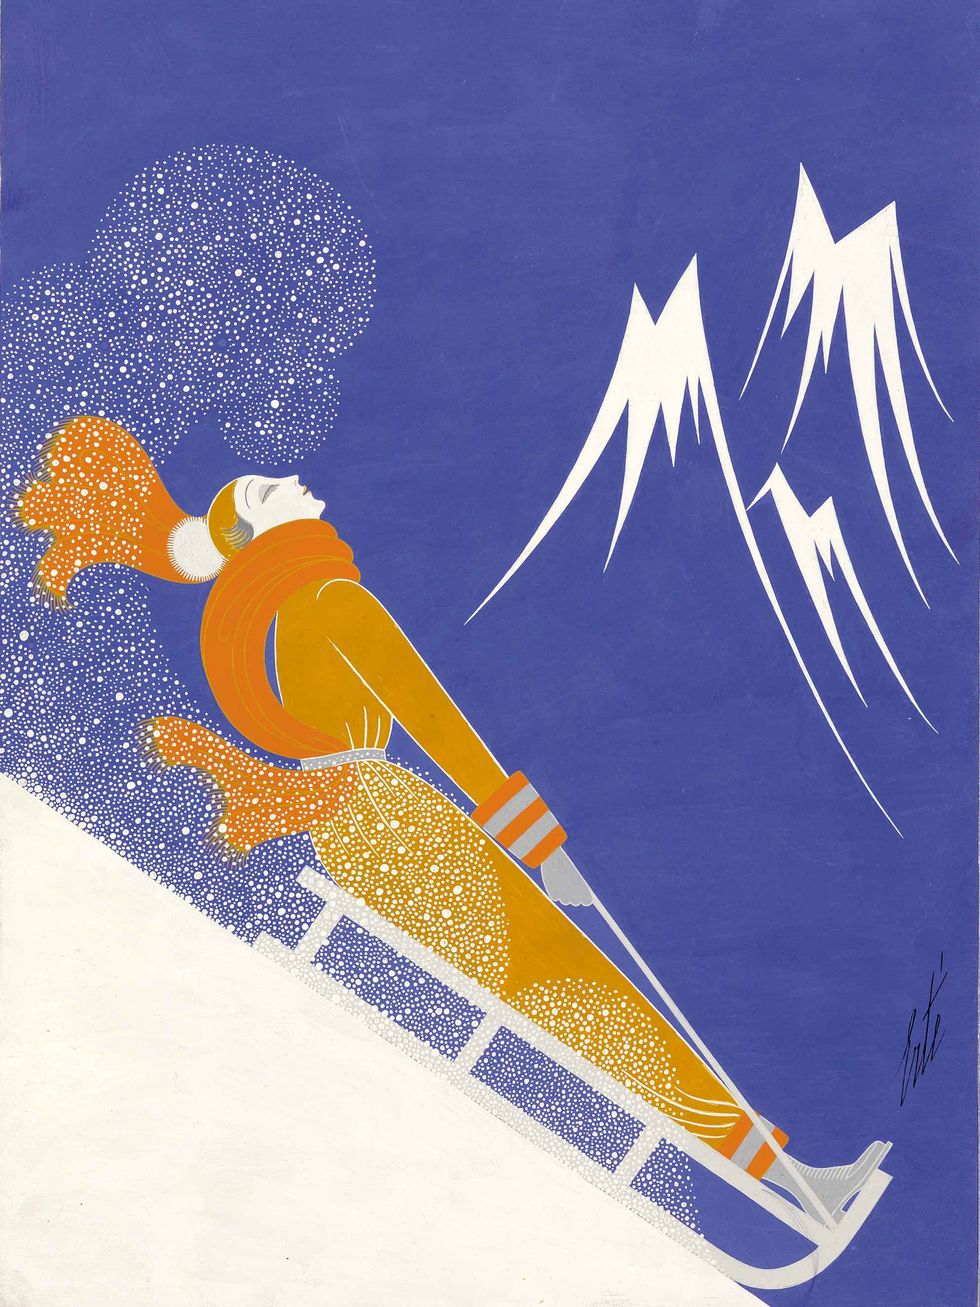 Erté, Sports d'Hiver, cover illustration for Harper's Bazaar, gouache, 1933